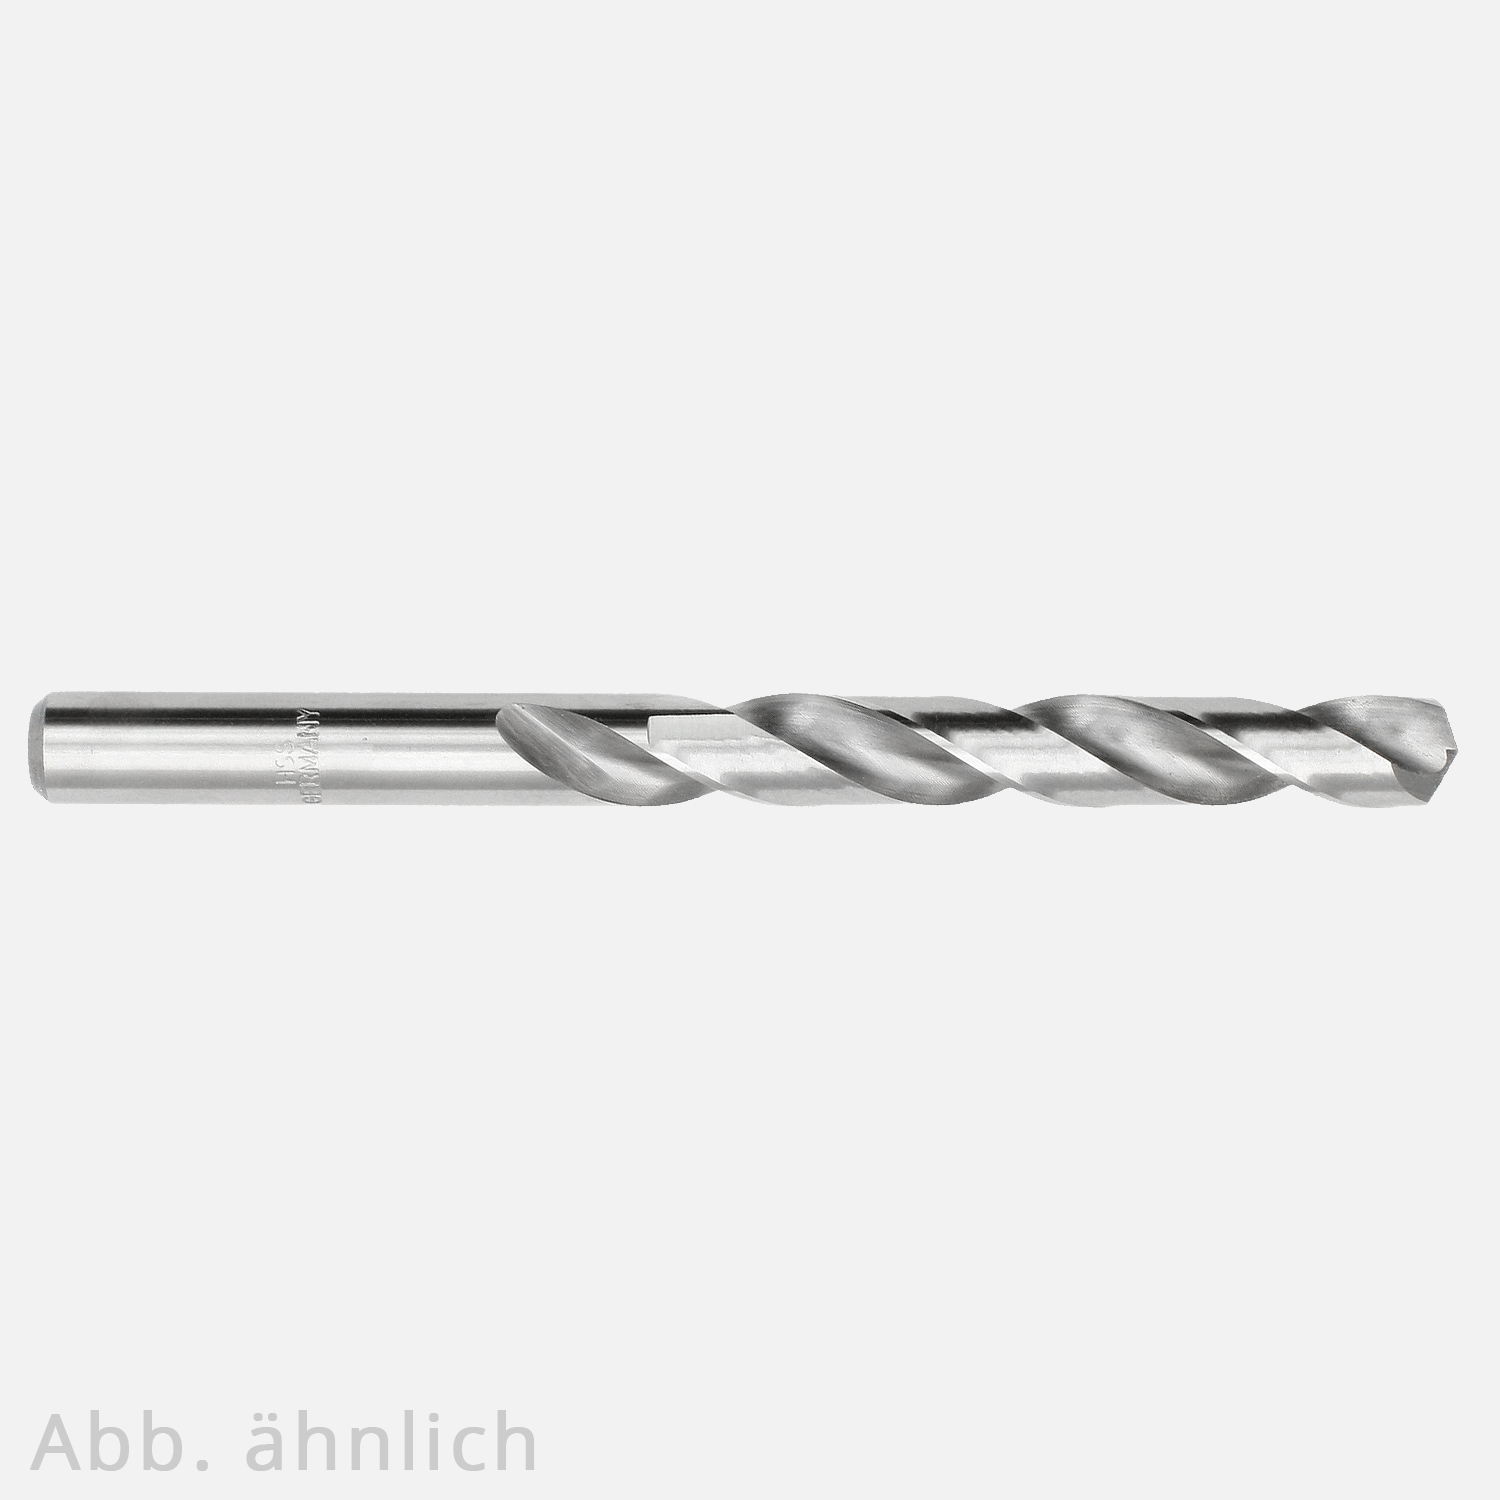 1 KEIL HSS-G Metallbohrer Ø= 8,4mm Länge= 117mm - geschliffen - DIN 338